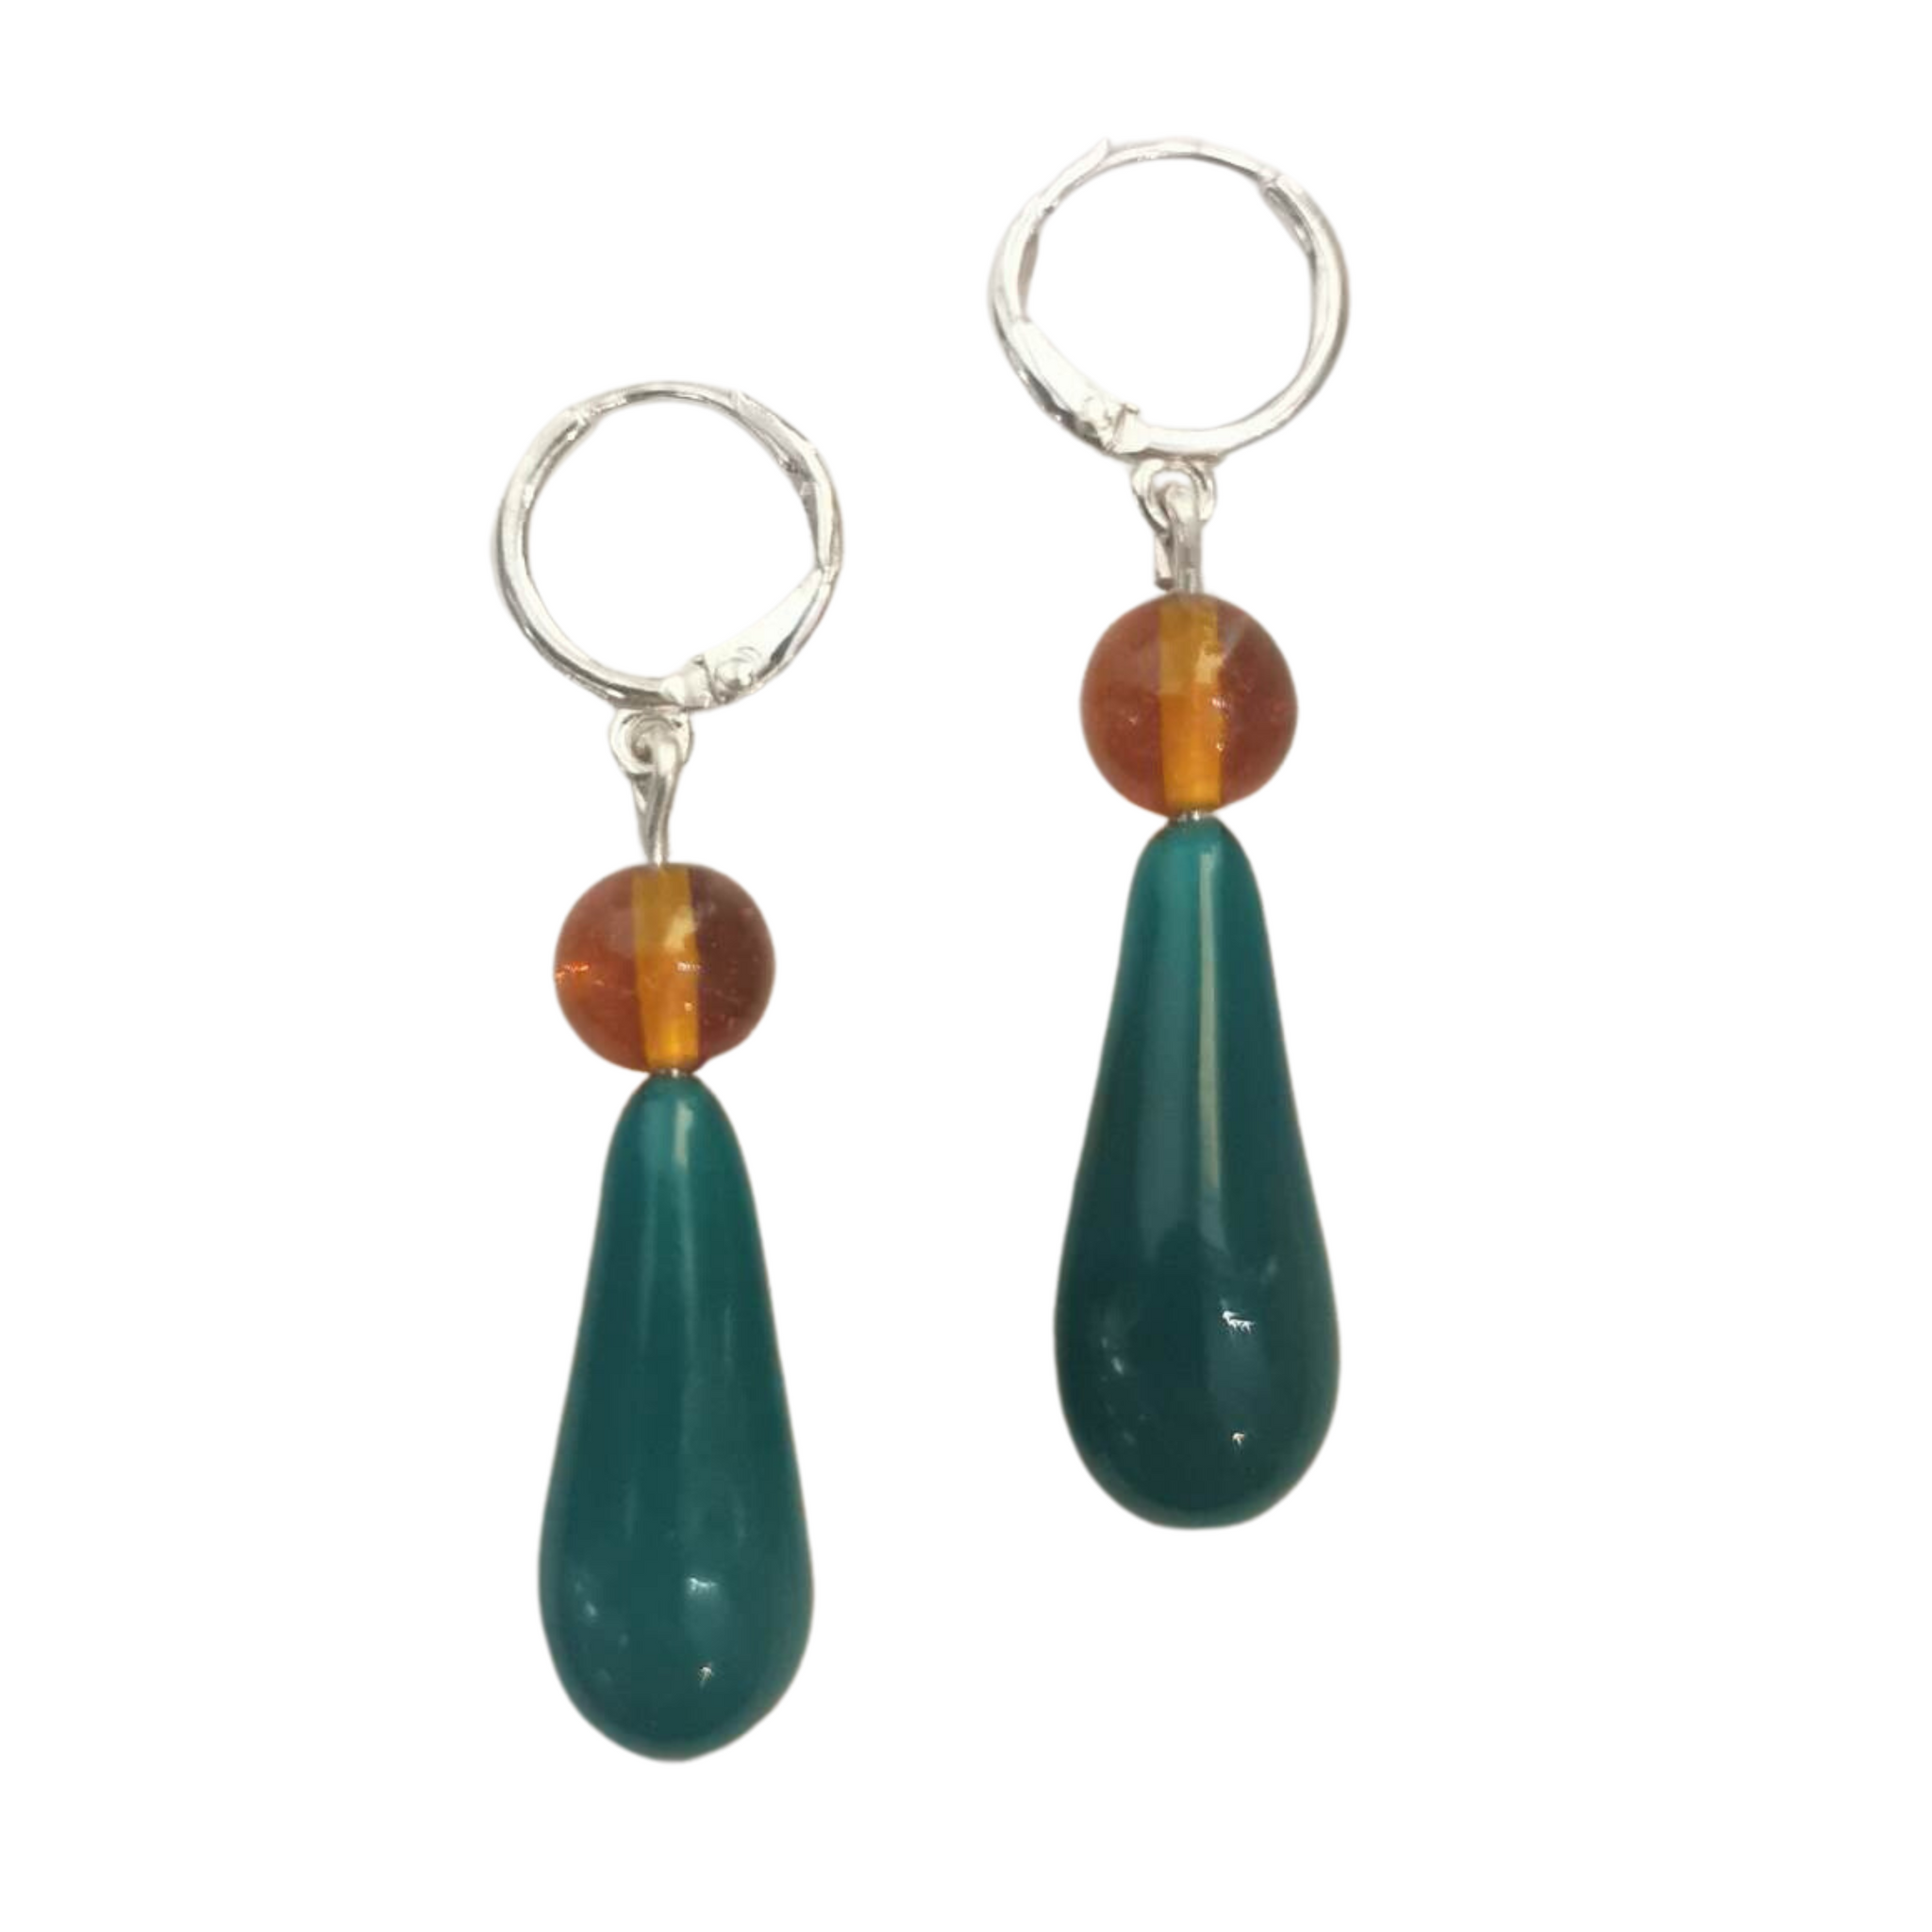 LaLa earrings, Amber & Rainforest